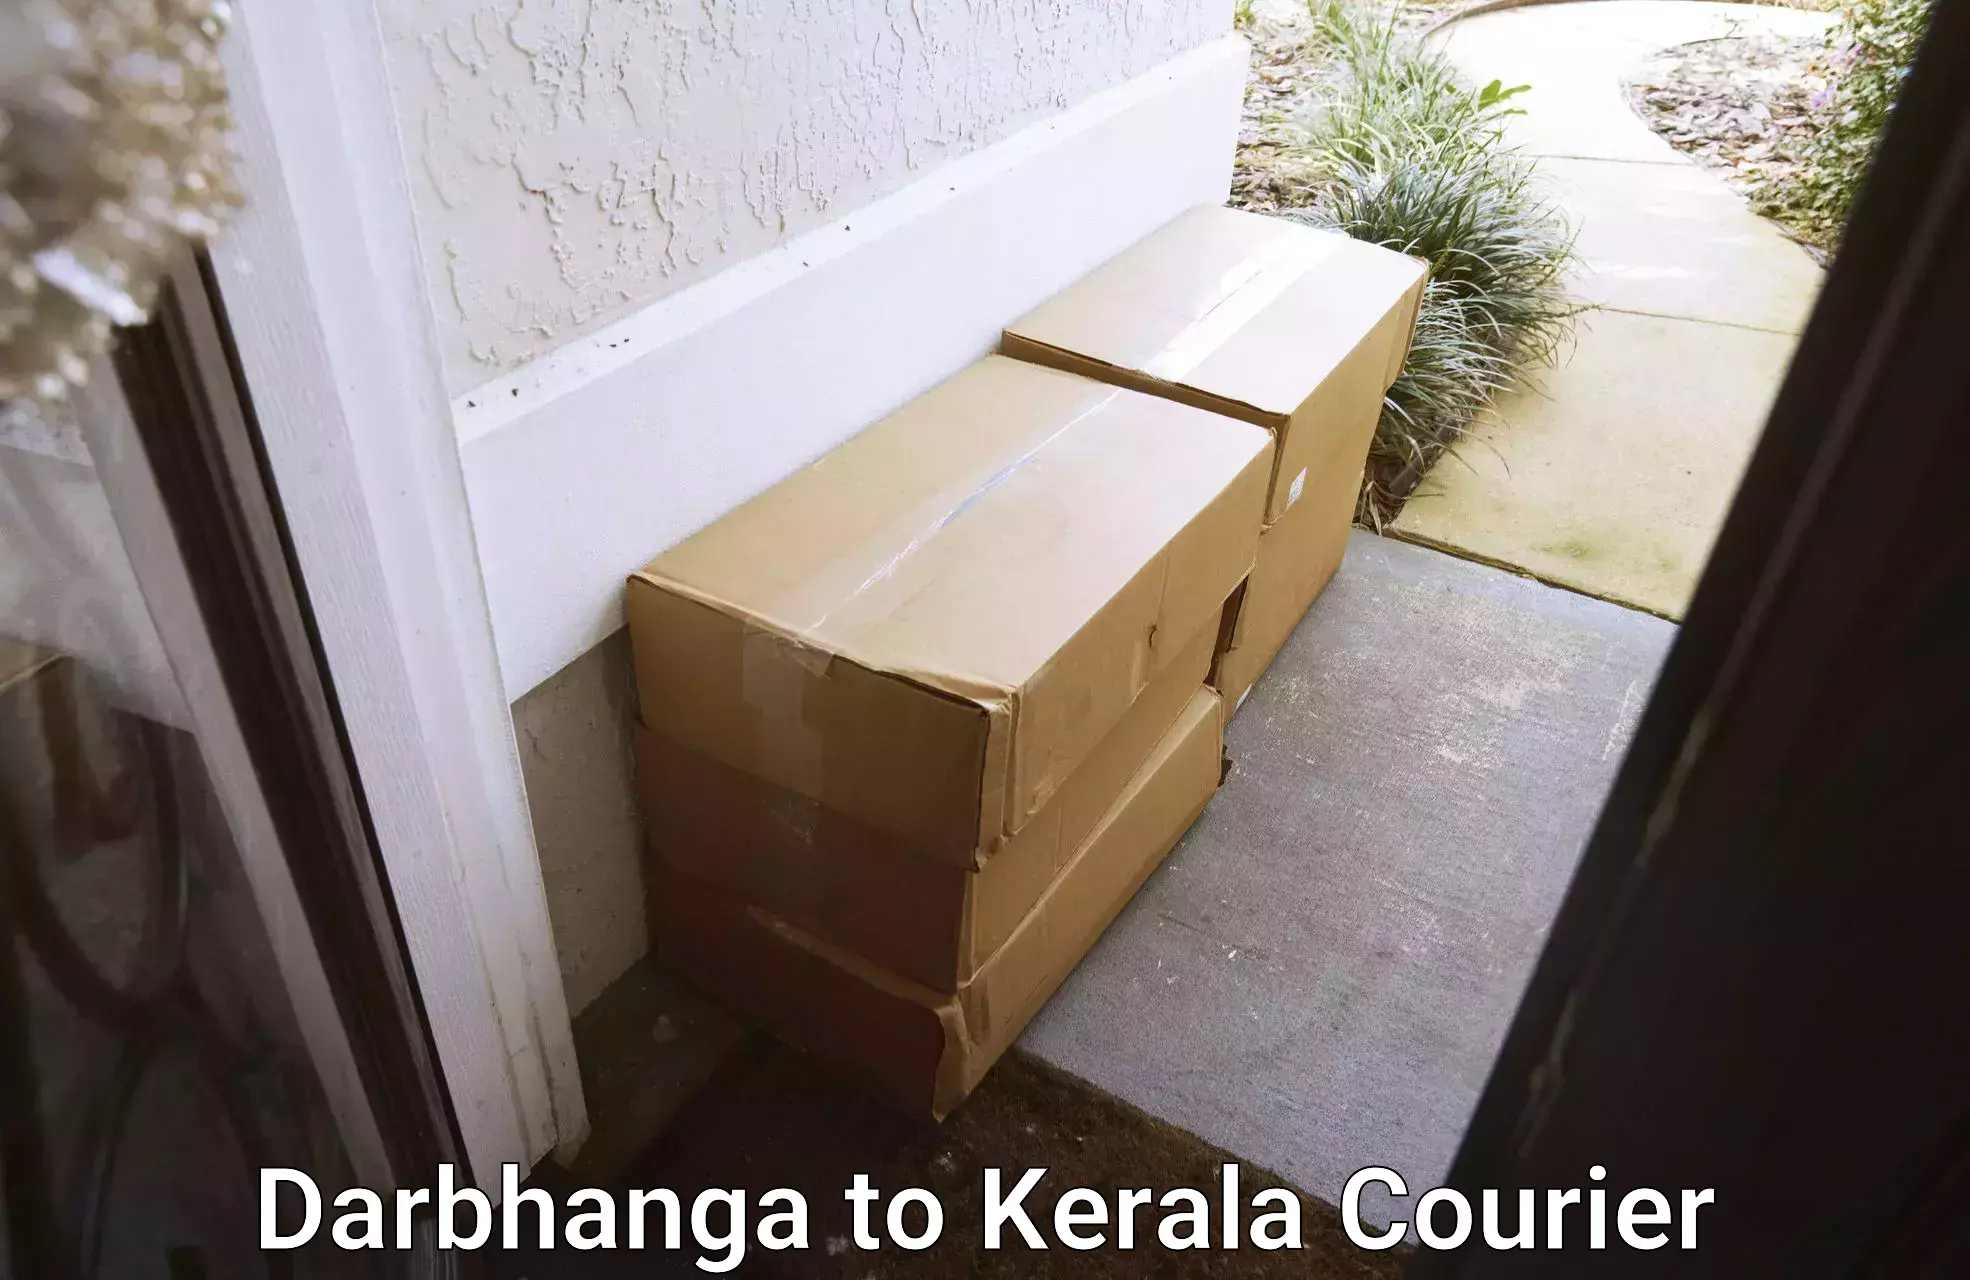 Household moving experts Darbhanga to Kerala